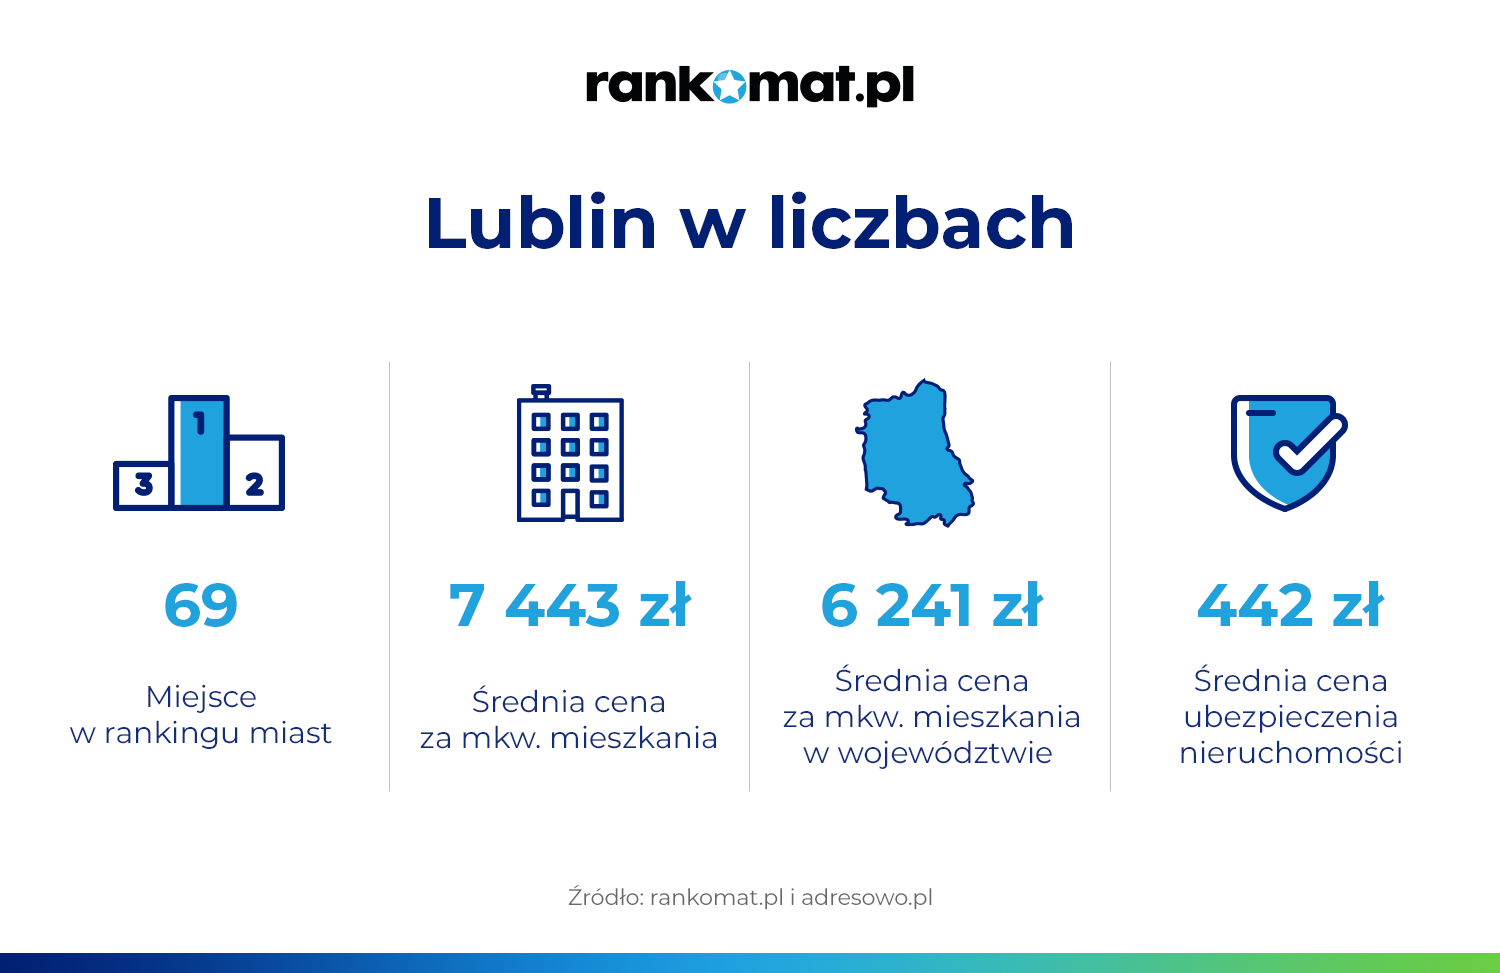 W Lublinie za mkw. mieszkania z rynku wtórnego trzeba już zapłacić ponad 7 tys. złotych. Jak jest w innych miastach?